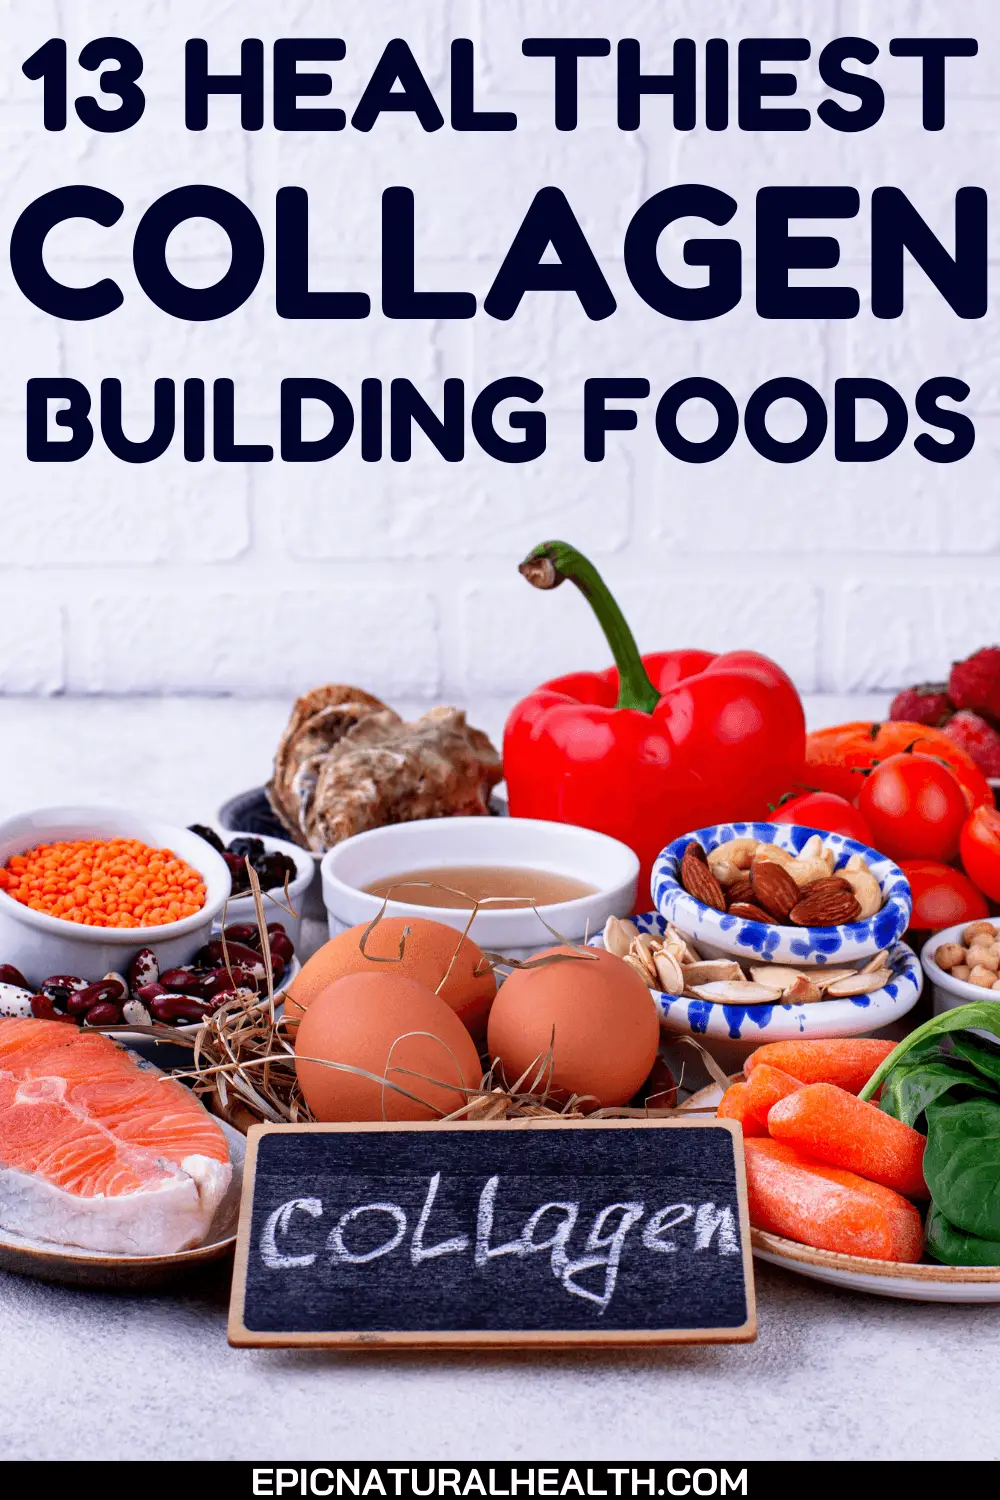 13 healthiest collagen building foods